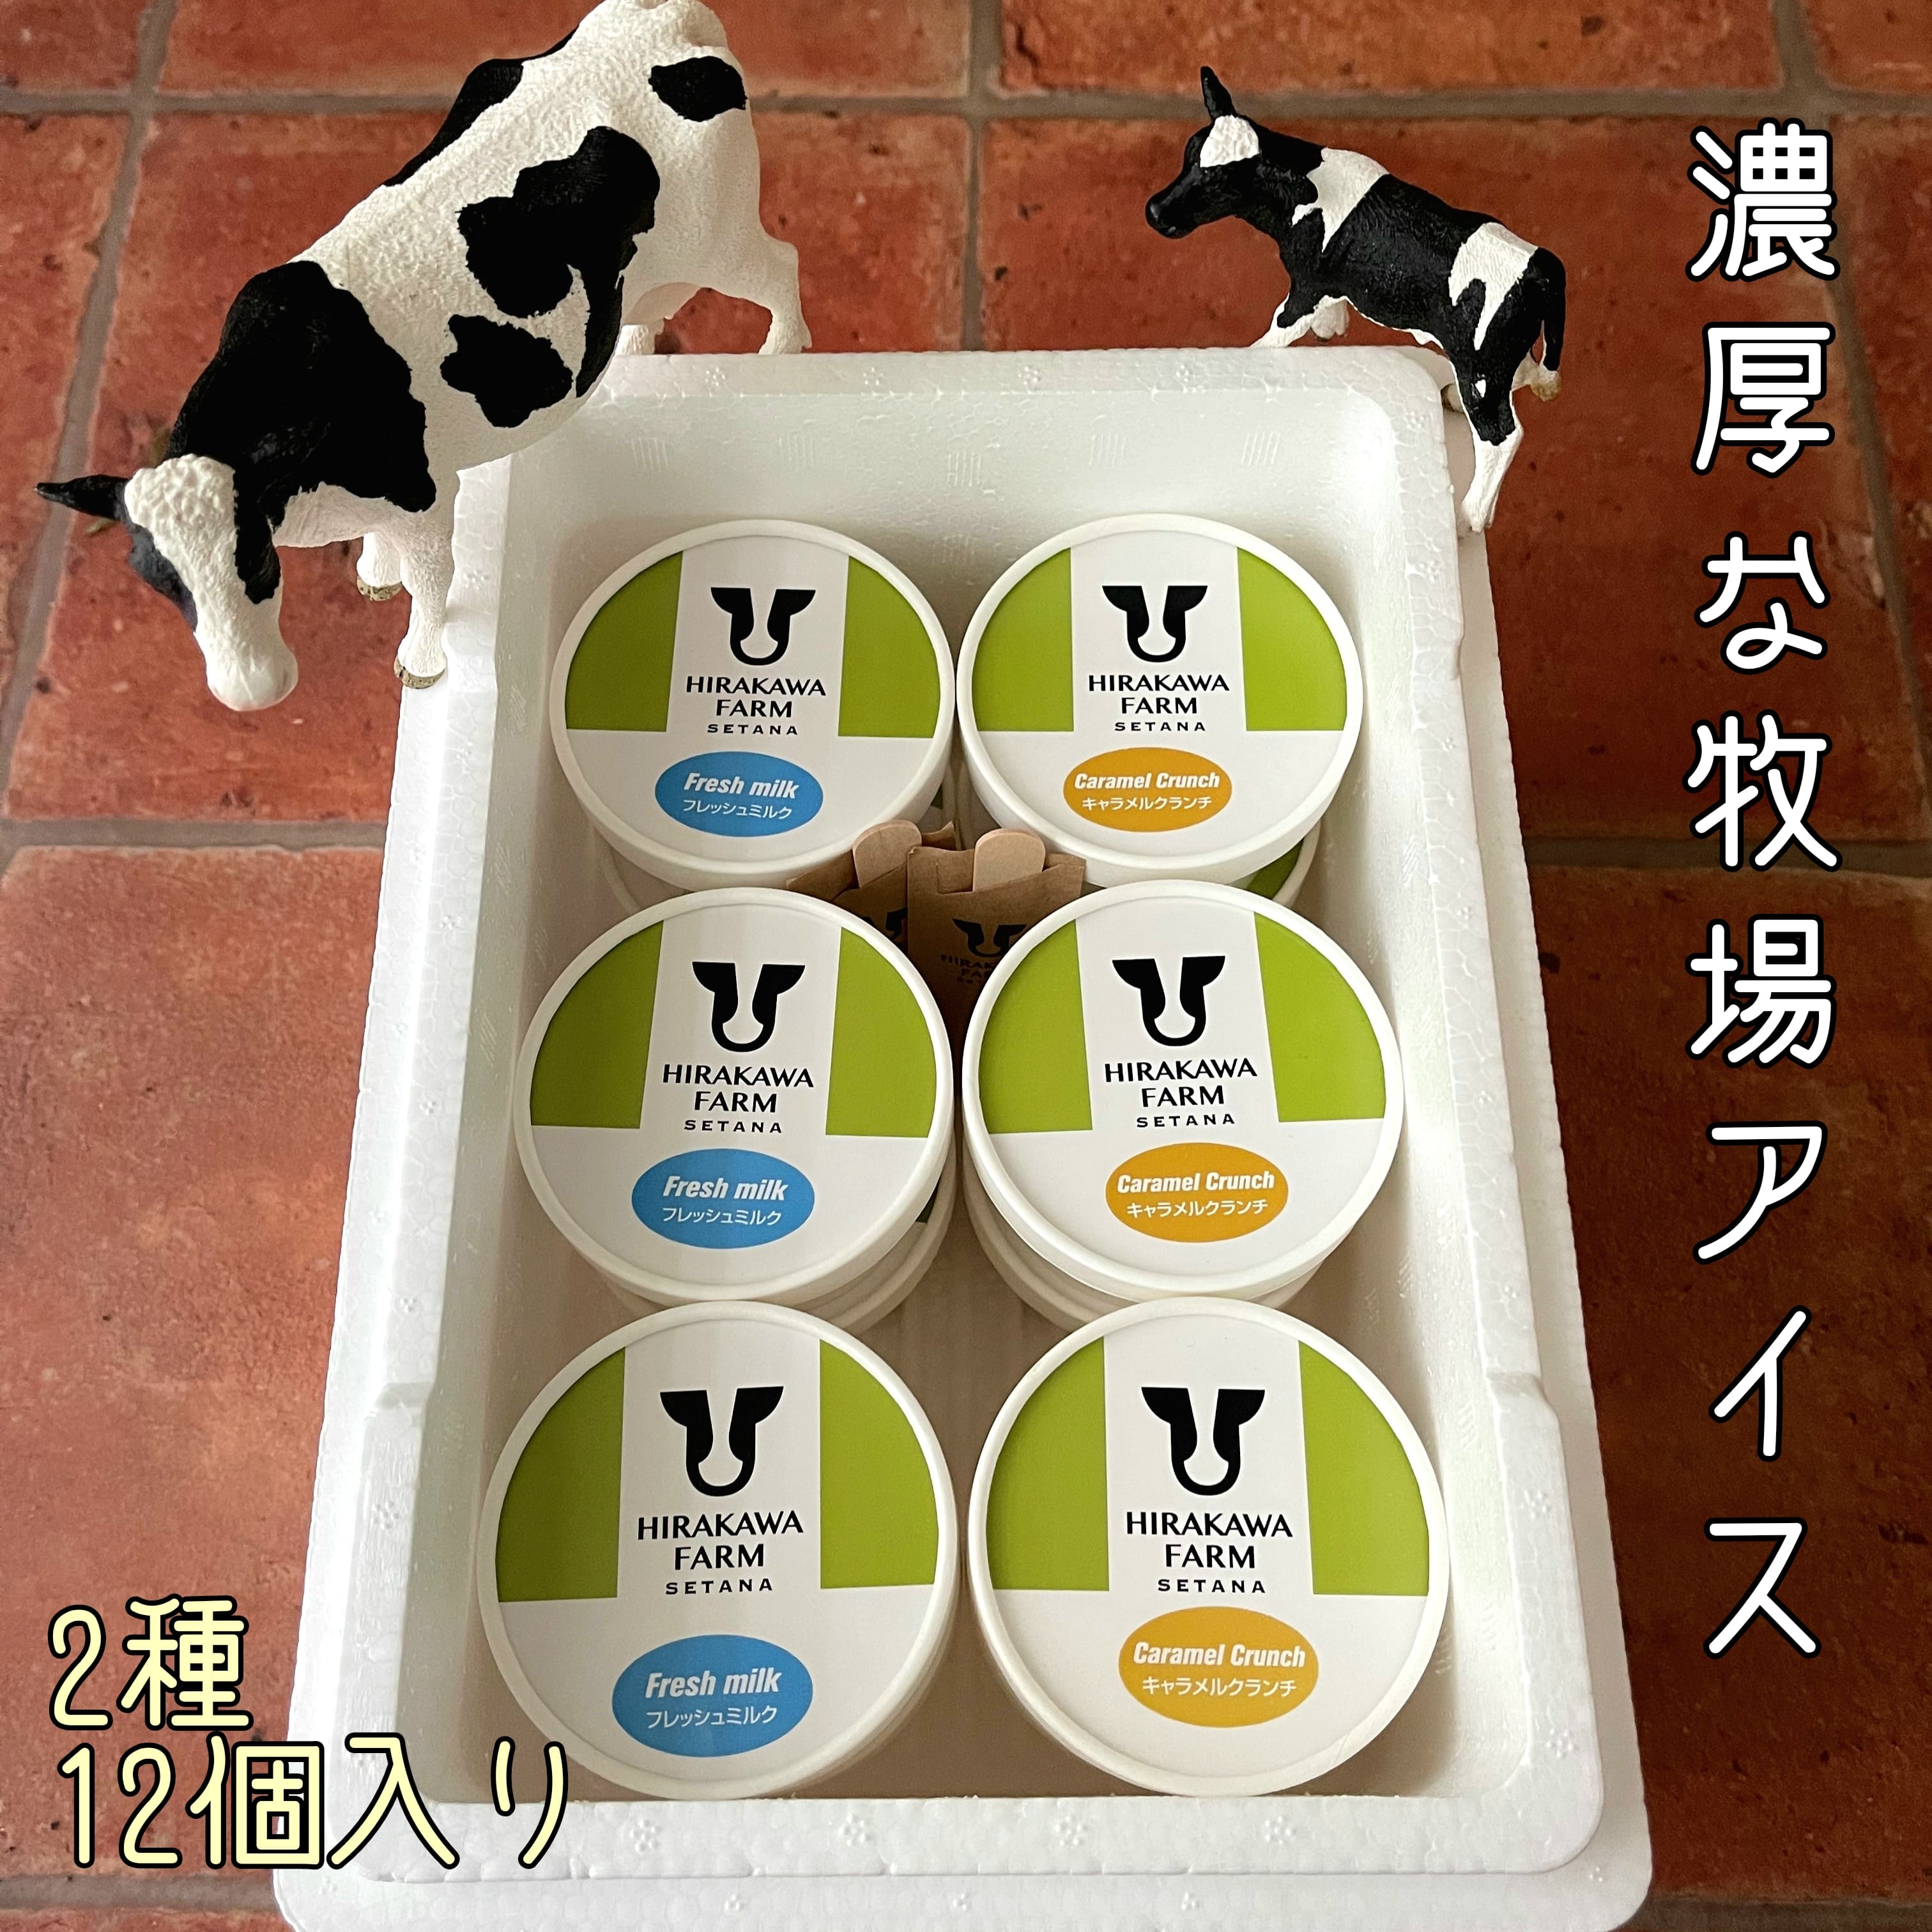 商品の内容・特徴について 説明 美味しい牛乳は、土作り・草づくり・牛づくりから ひらかわ牧場では、栽培期間中化学肥料を一切使わず牧草を栽培しており、その牧草地に放された牛たちは、大自然の中でびのびと過ごしています。 農場HACCP認証を取得し、生乳は徹底した衛生管理により生産されています。 アイスクリームの原料に使う牛乳は、生乳本来の味を損なわないよう、低温殺菌した搾乳後24時間以内の新鮮な牛乳を使用しています。 その生乳本来の優しい甘さや風味をしっかり感じることのできるアイスクリームに仕上がりました。 〇フレッシュミルク とてもシンプルな材料で作られています。 搾りたての新鮮な生乳を使うことで、ミルク本来の味わいが感じられます。 ひらかわ牧場の生乳をしっかり味わえます。 牧場おすすめ! 〇キャラメルクランチ 砕いたキャラメルキャンディーの食感がアクセントとなり、キャラメルの甘さとほのかな苦みが深い味わいです。 牧場おすすめ! 〇アレルギー 乳、卵 内容量 ・フレッシュミルク[100ml×6個] ・キャラメルクランチ[100ml×6個] 原産地・製造地 北海道せたな町 原材料 【フレッシュミルク】生乳(せたな町産)、乳製品、砂糖/トレハロース、乳化剤、安定剤(増粘多糖類)) 【キャラメルクランチ】生乳(せたな町産)、乳製品、砂糖、キャラメル(砂糖、水、バター)、卵黄(卵を含む)/トレハロース、乳化剤、安定剤(増粘多糖類) 保存方法 要冷凍(-18℃以下) 賞味期限 配送方法 冷凍 注意事項 予告なくパッケージデザインや包装形態が変わる場合があります。 提供事業者 ひらかわ牧場アイスクリーム工房 北海道久遠郡せたな町北檜山区松岡164-10